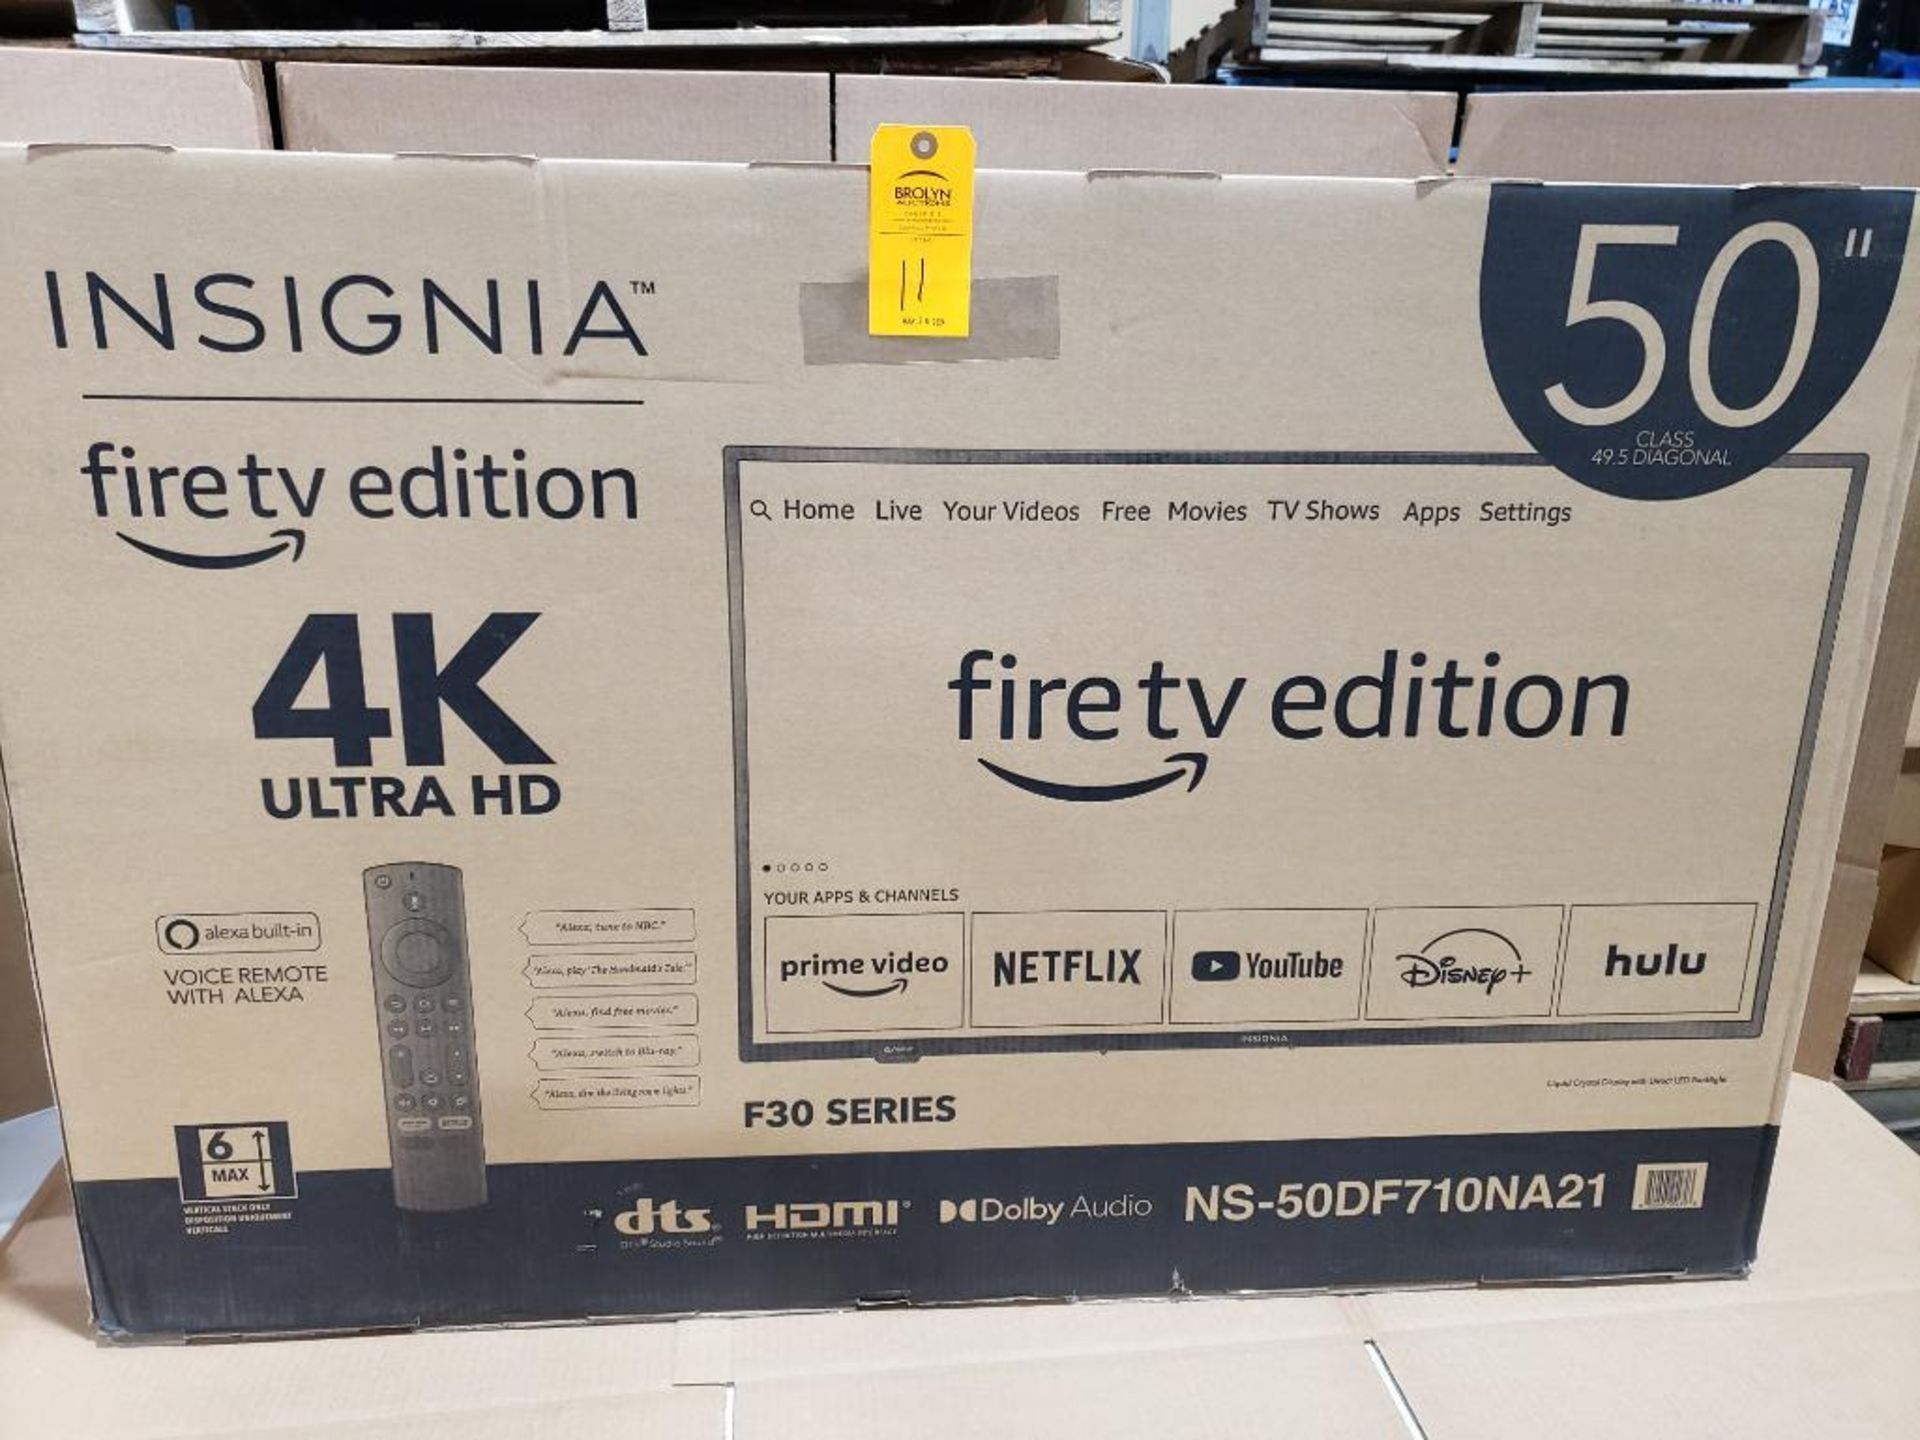 50in Insignia Fire TV. 4K Ultra HD.